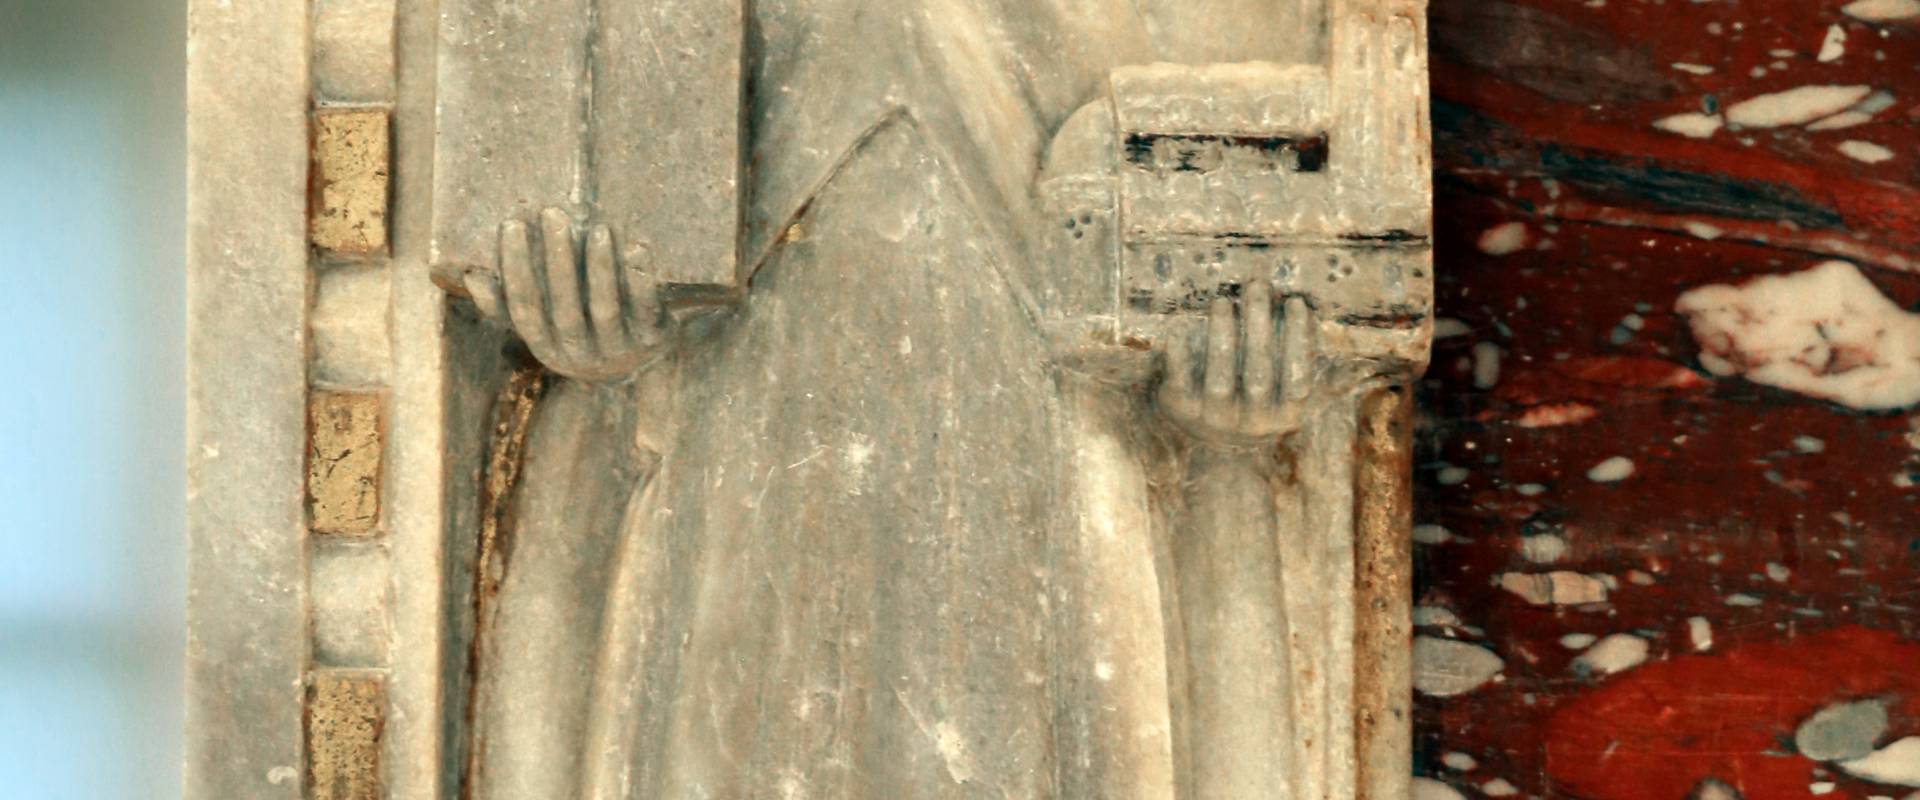 Sarcofago del beato giacomo salomoni, 1340 ca., da s. giacomo apostolo in san domenico, 05 photo by Sailko